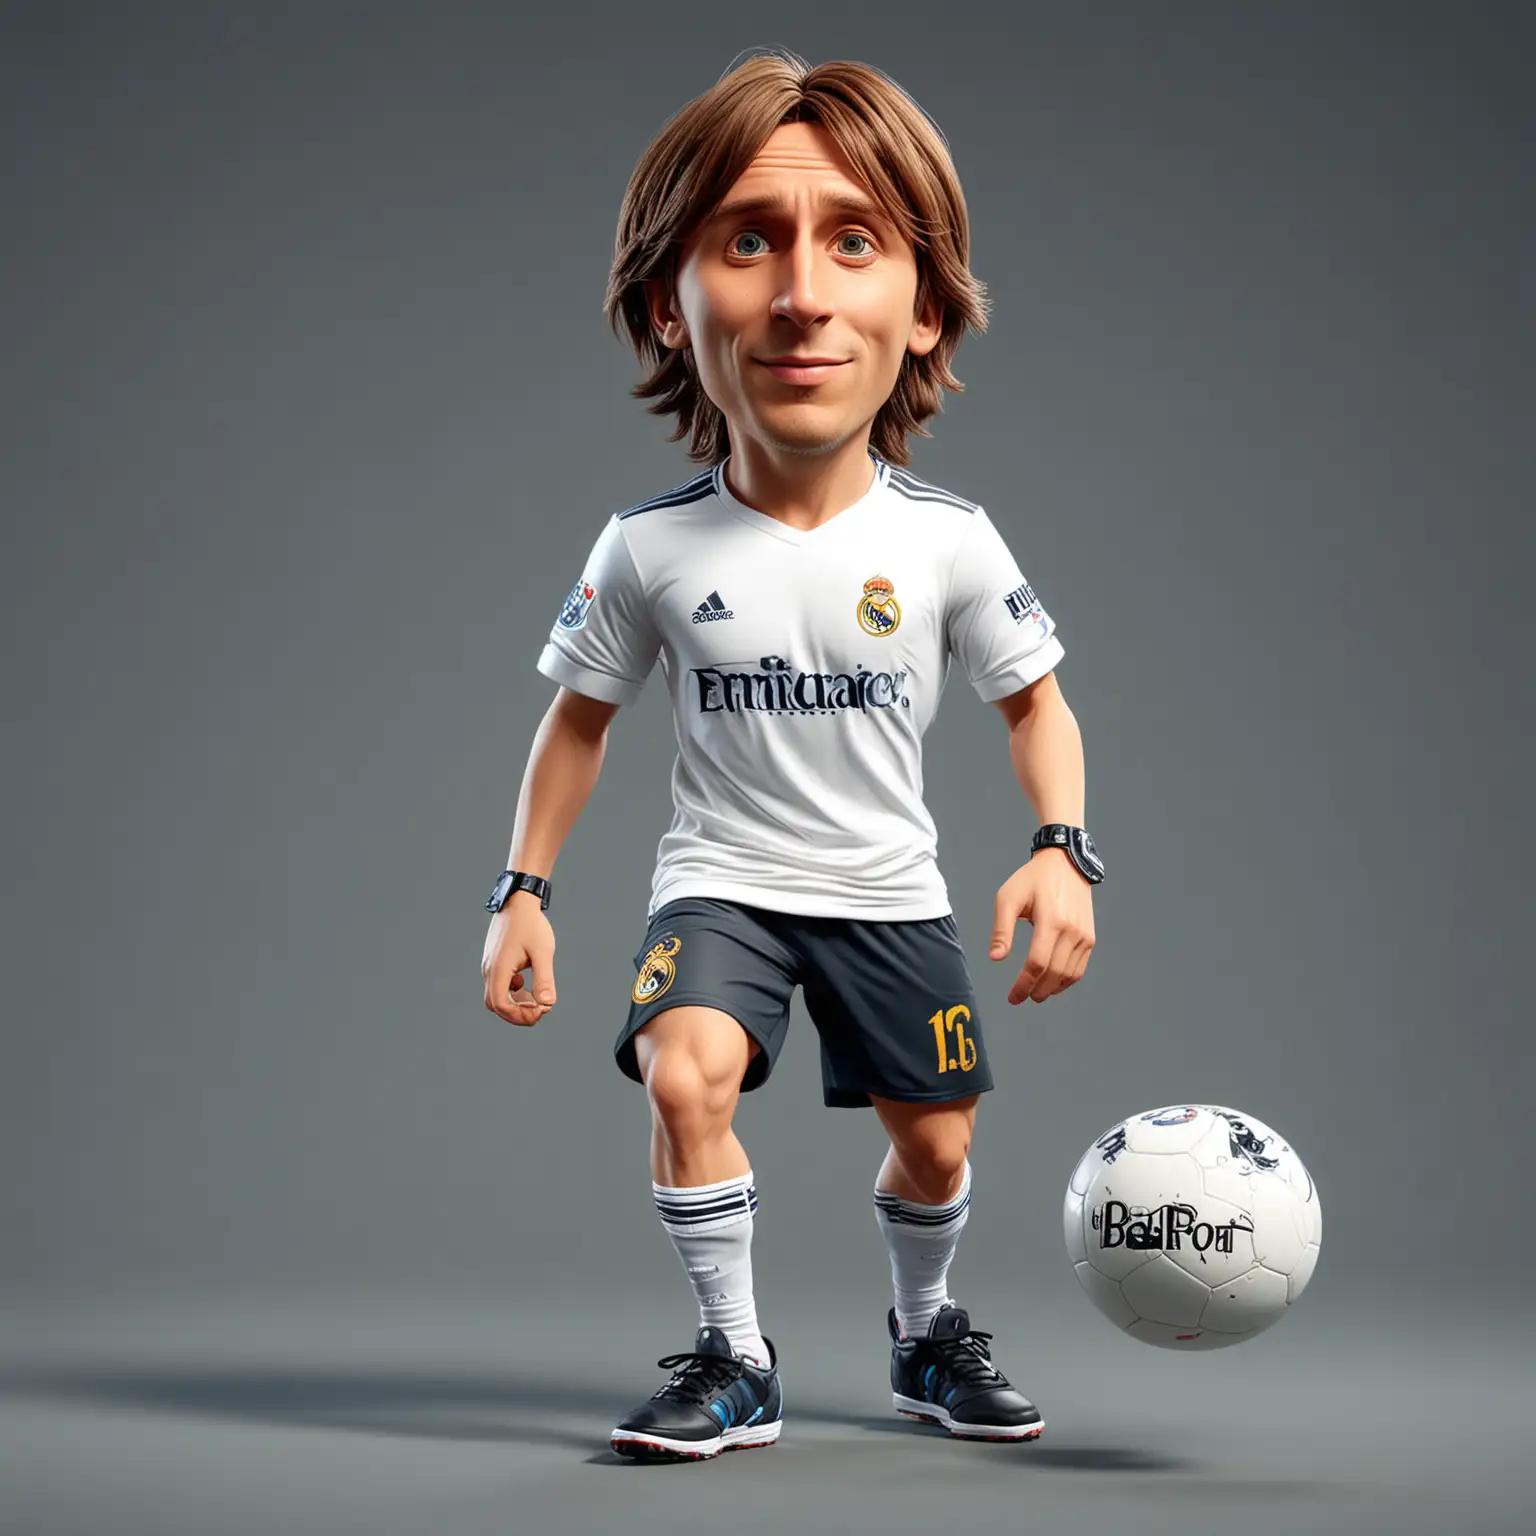 Dynamic Soccer Star Luka Modri in Real Madrid Jersey Dribbles in 3D Cartoon Style